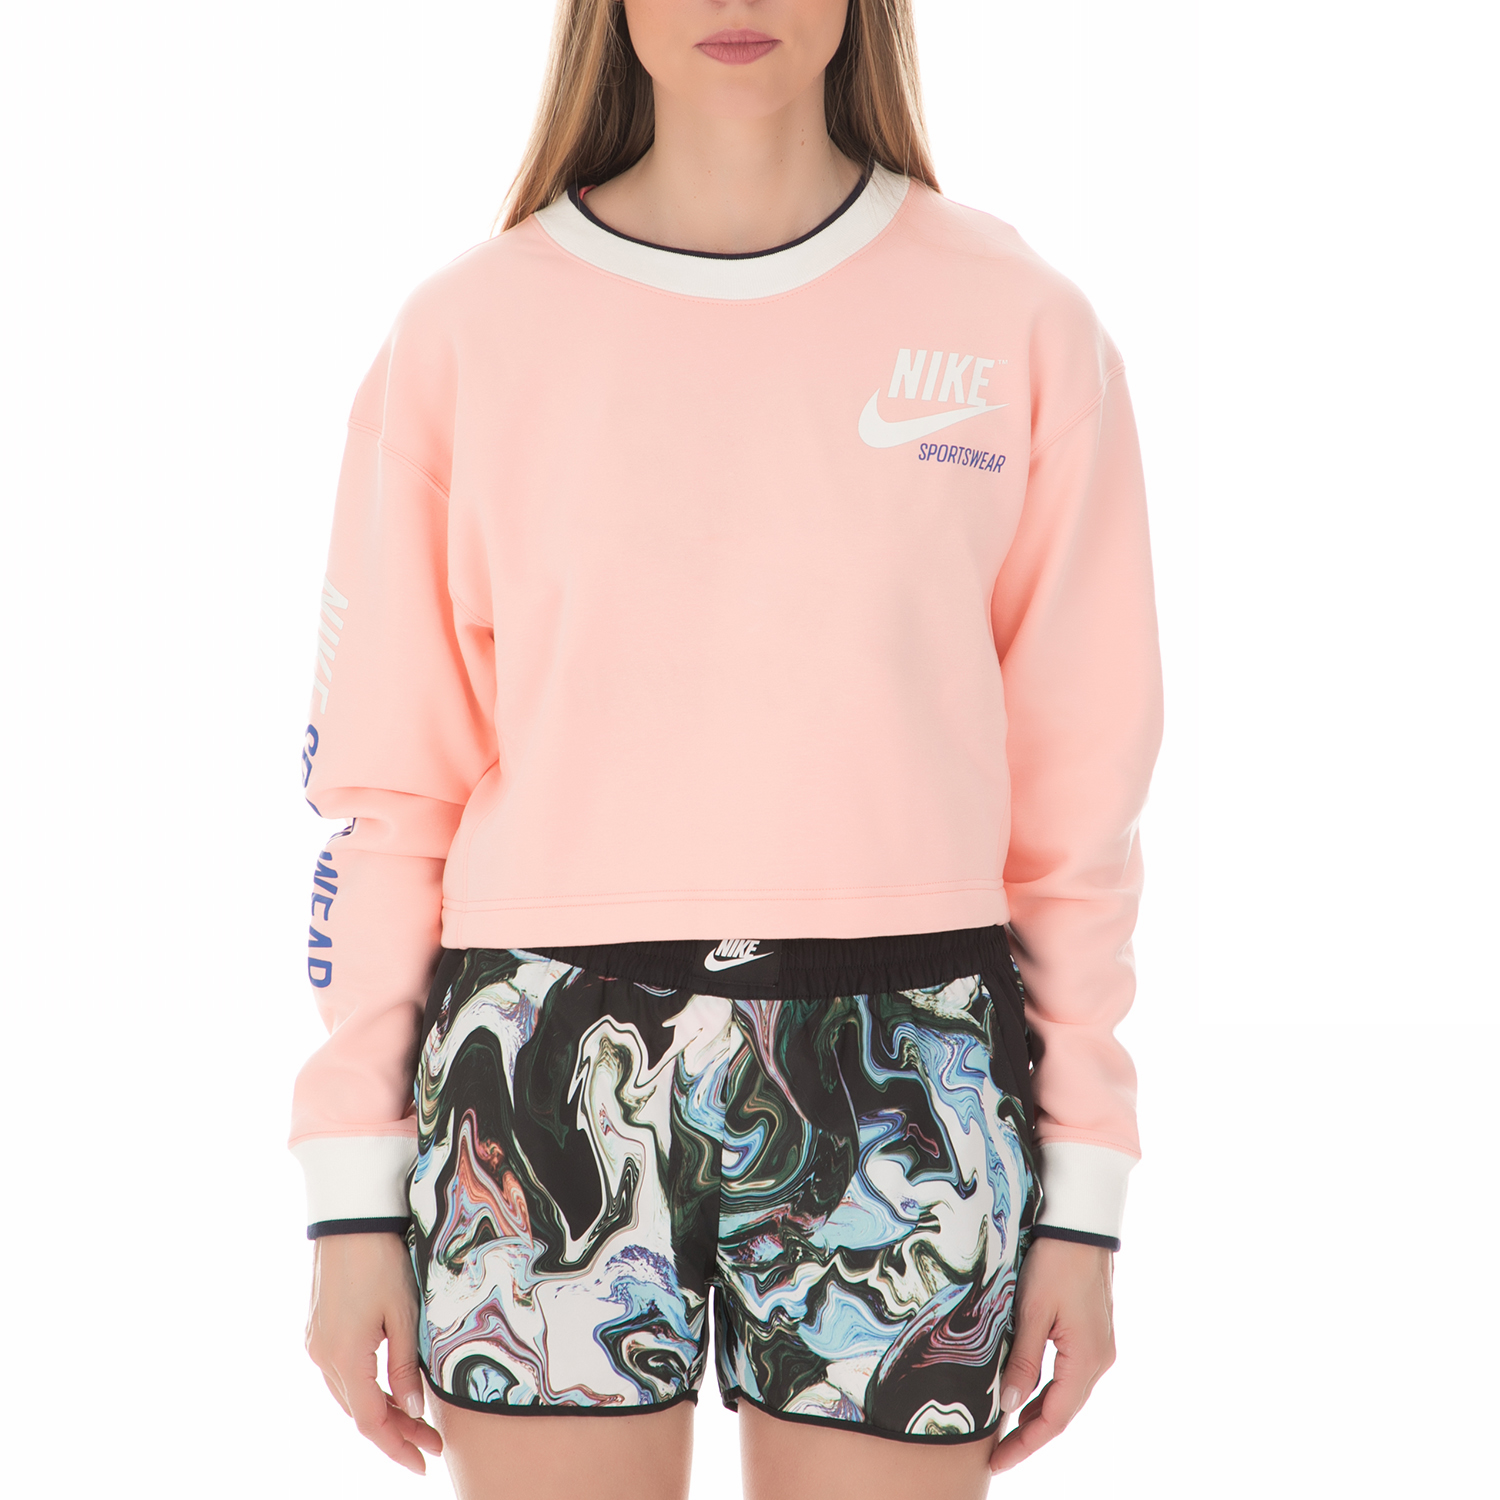 Γυναικεία/Ρούχα/Αθλητικά/Φούτερ-Μακρυμάνικα NIKE - Γυναικεία φούτερ μπλούζα NIKE Sportswear ροζ